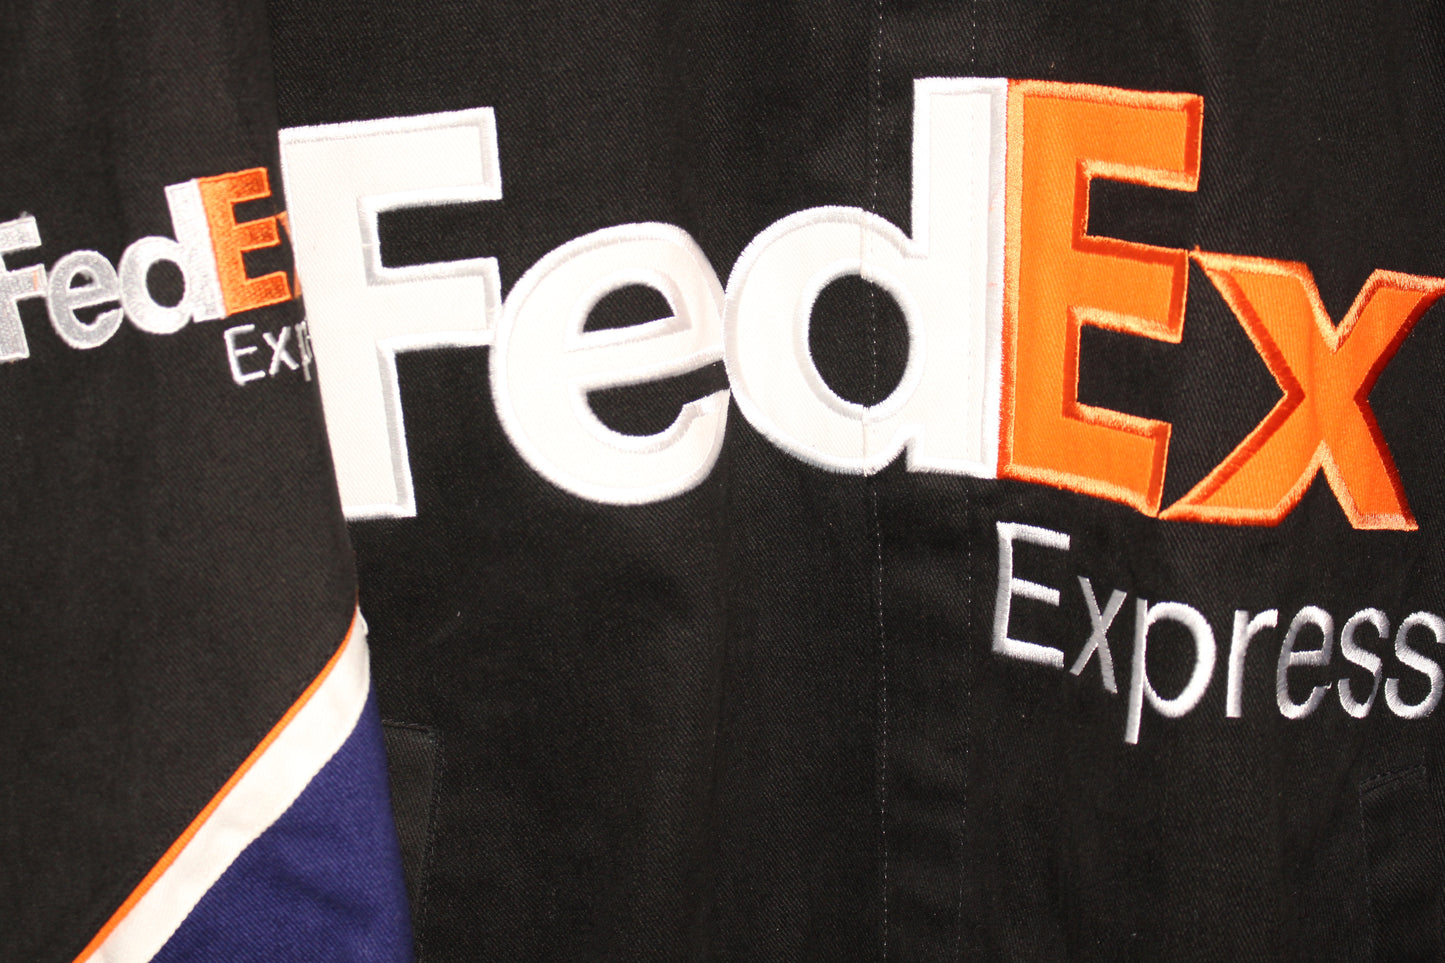 FedEx Racing NASCAR Denny Hamlin #11 (XL)